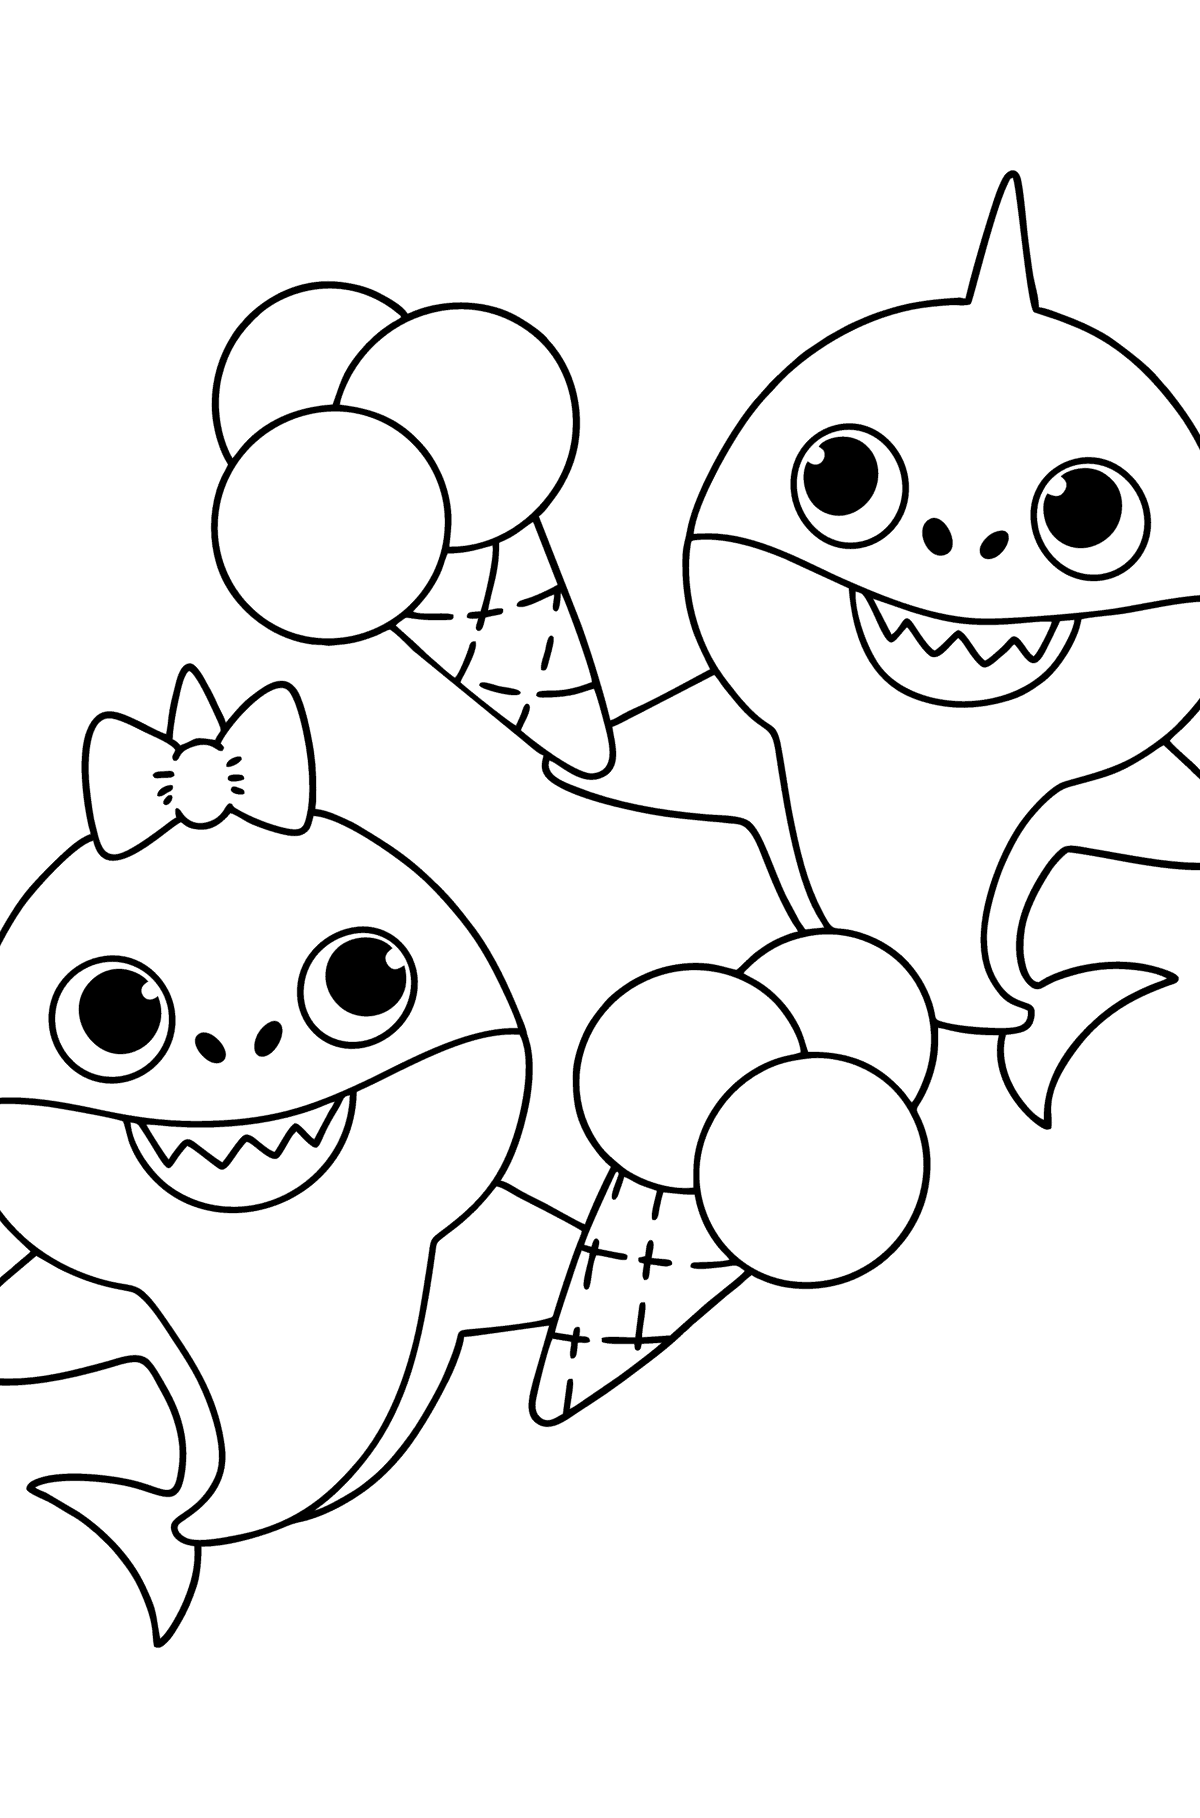 Desenho de Irmão e irmã Baby shark para colorir - Imagens para Colorir para Crianças